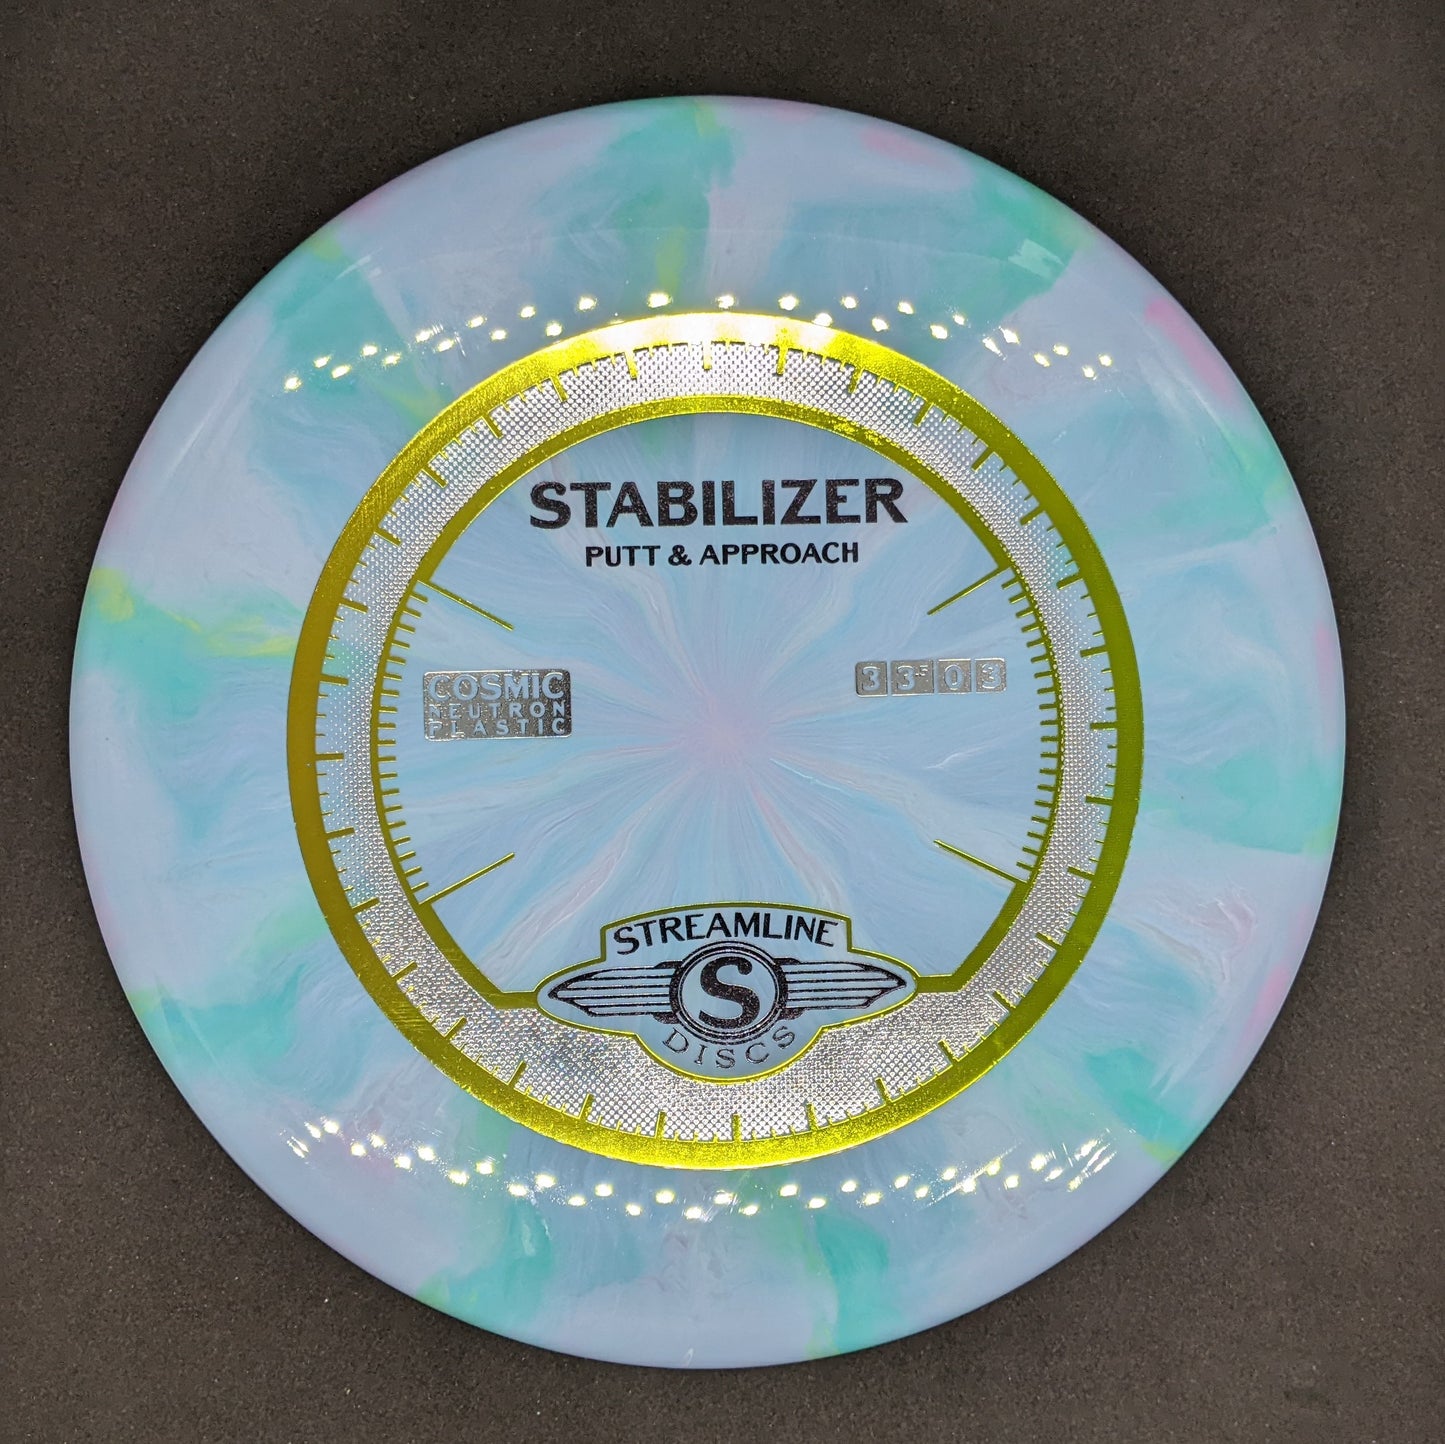 Streamline - Stabilizer - Cosmic Neutron